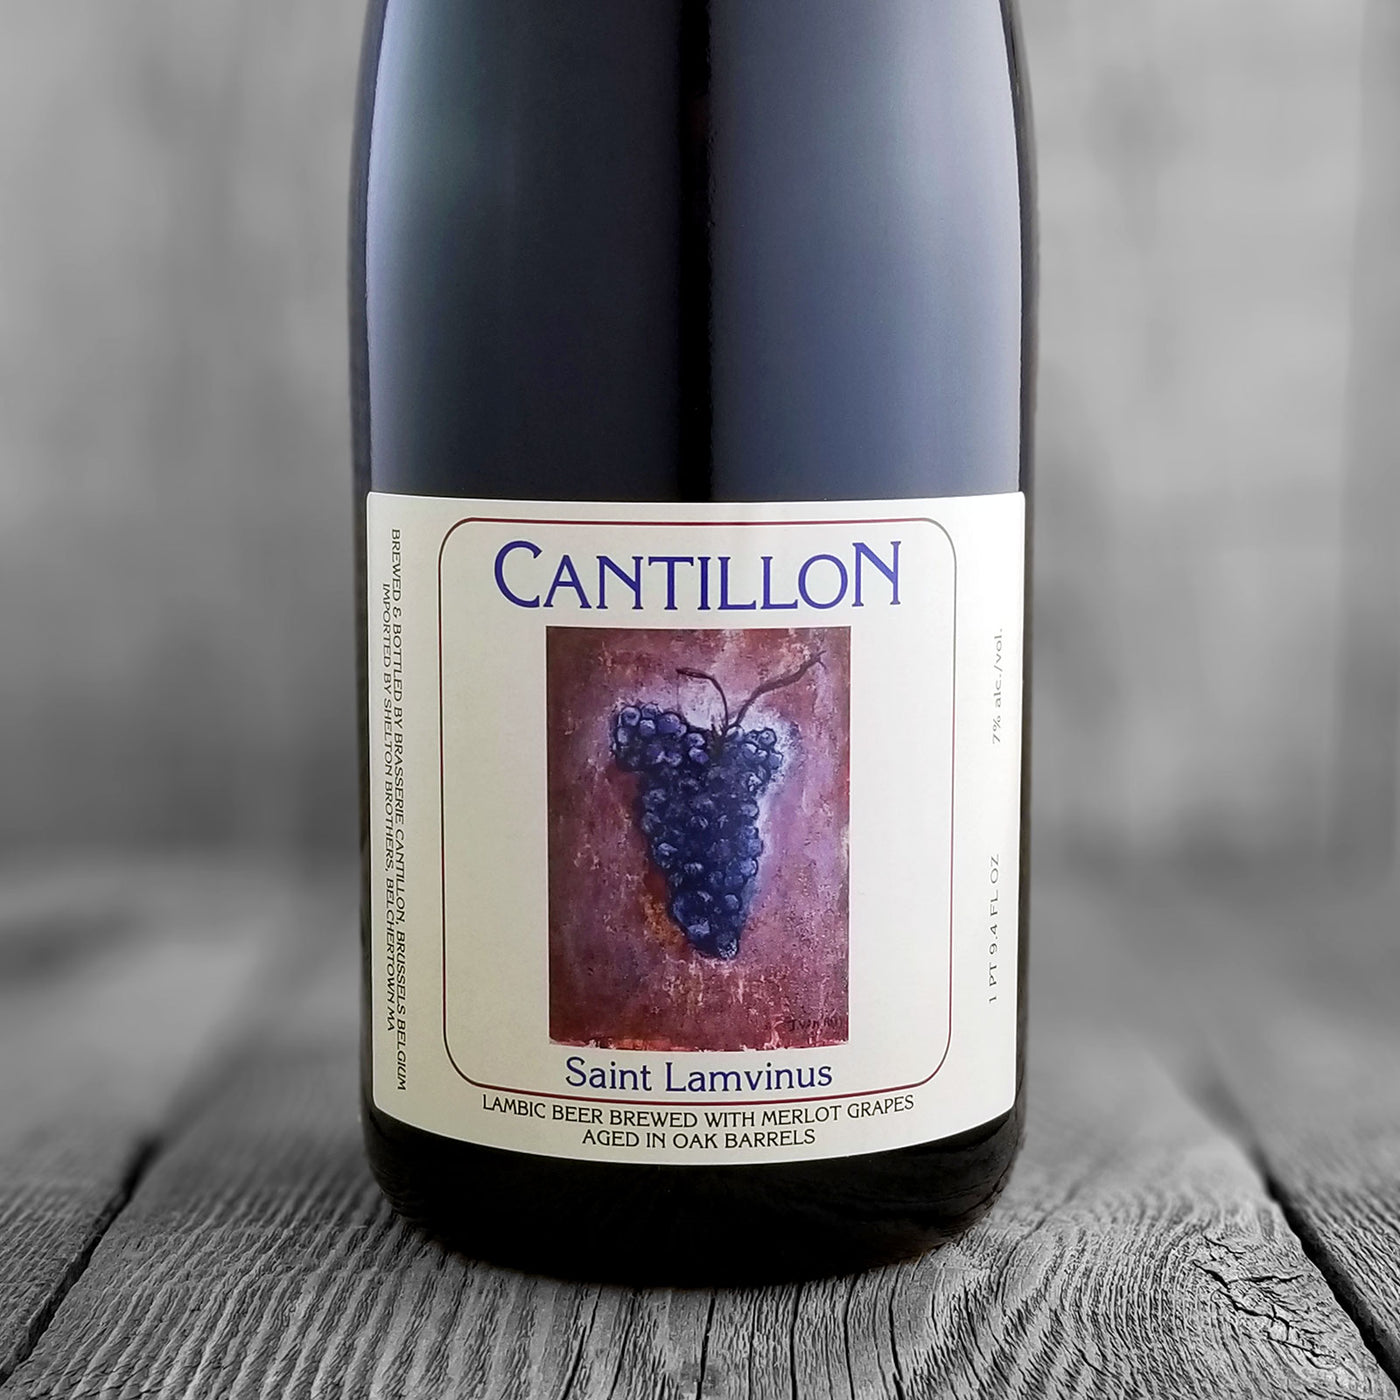 Cantillon Saint Lamvinus - Limit 1